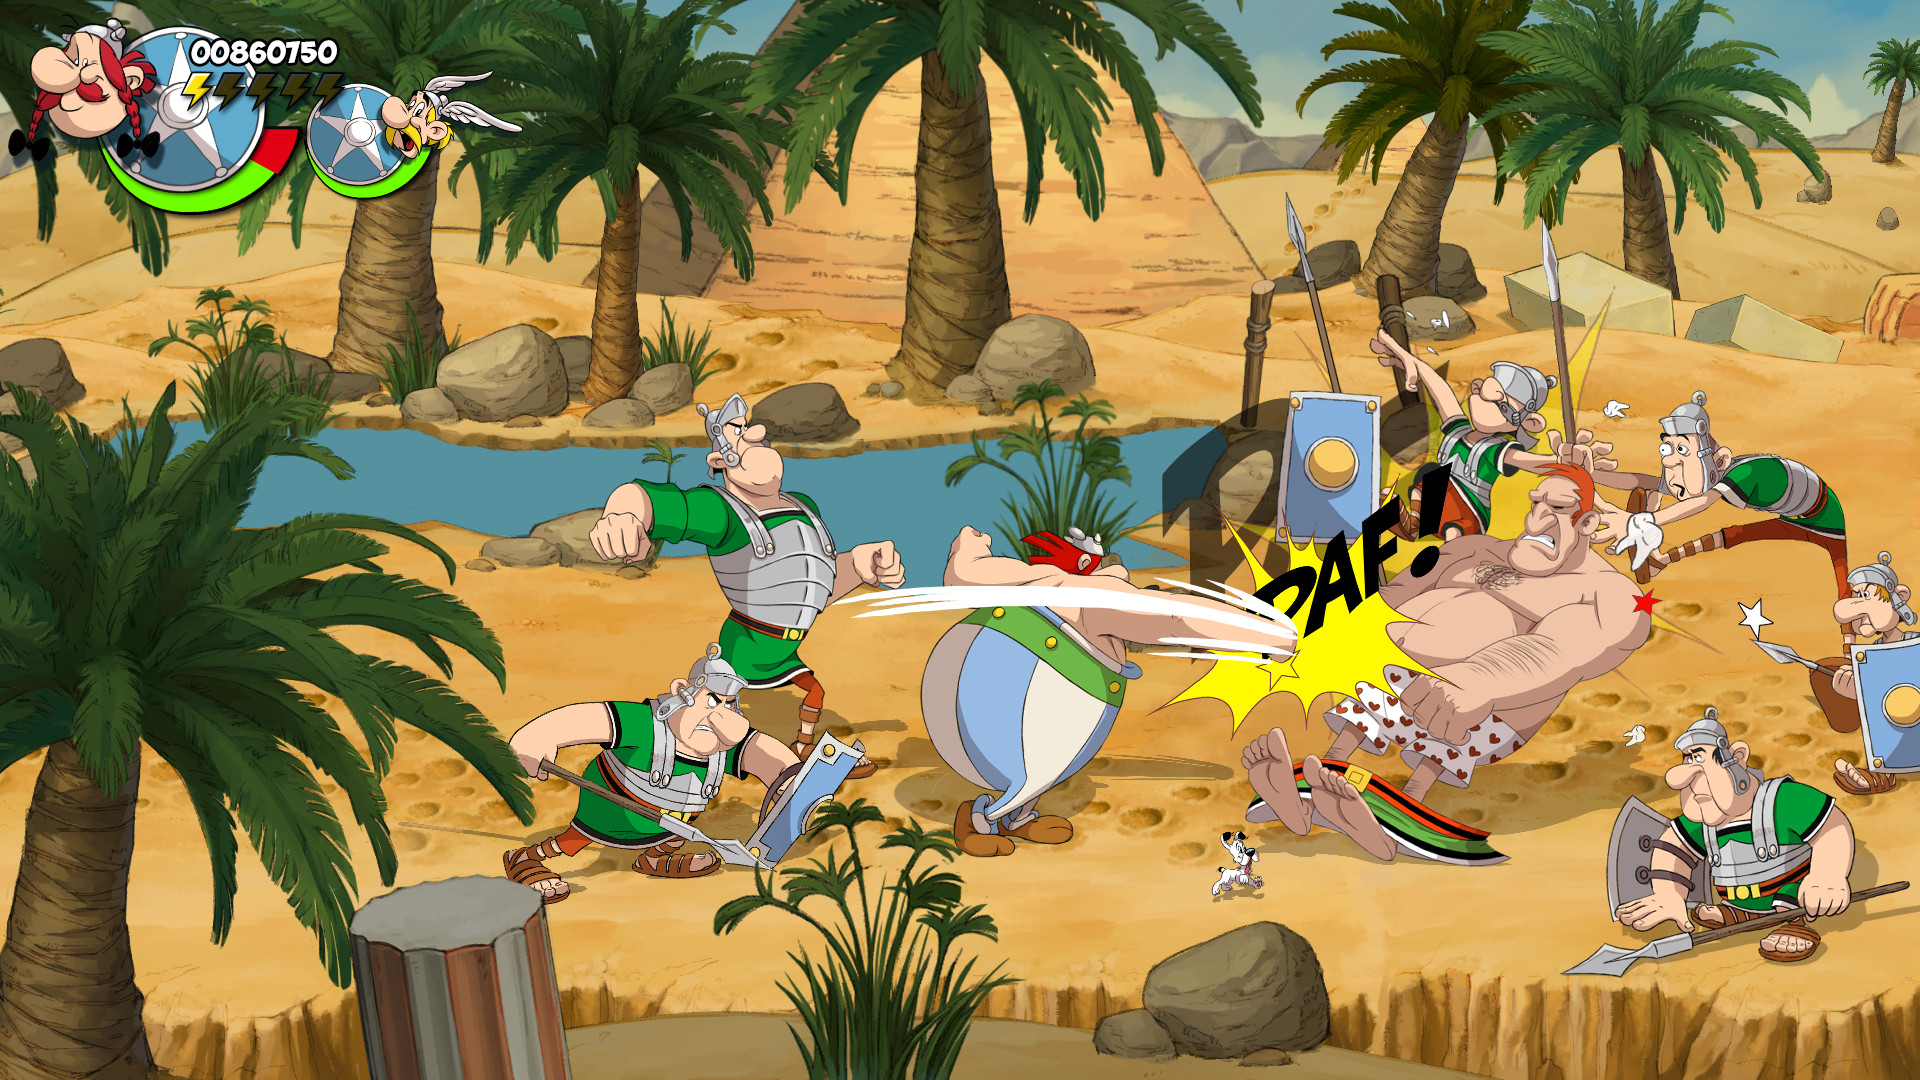 Asterix & Obelix: Slap them All! Free Download